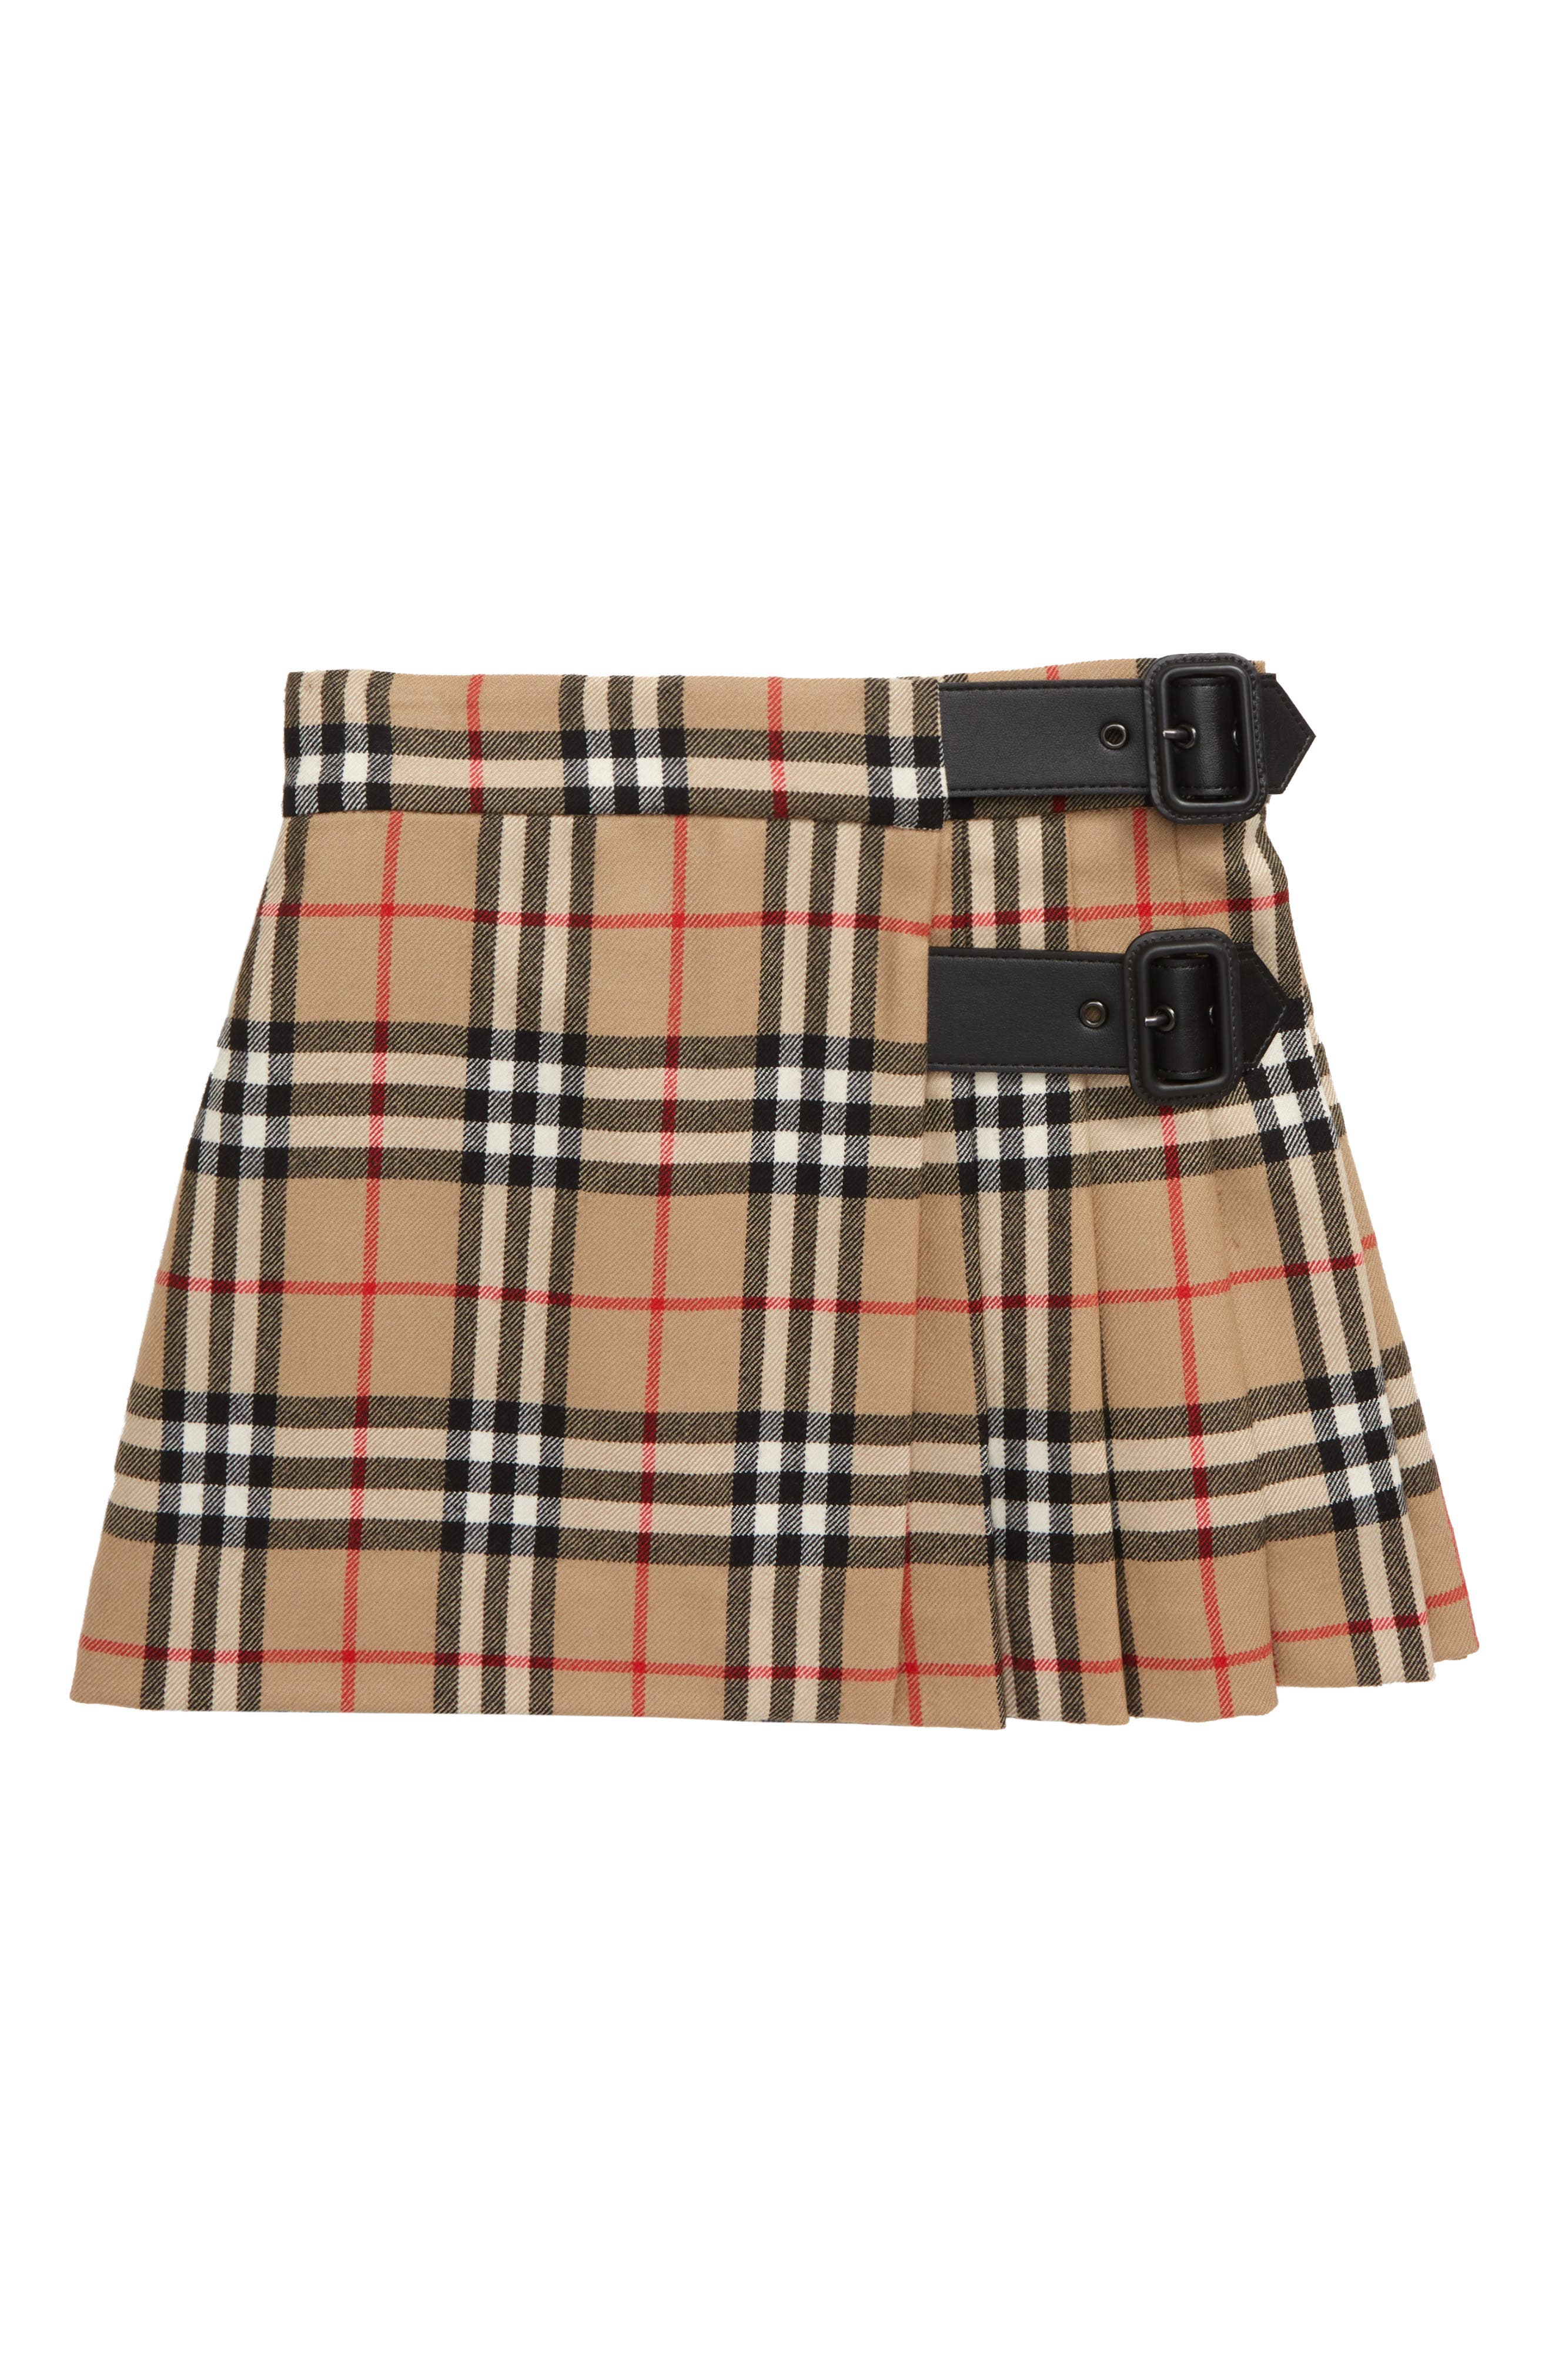 burberry skirt toddler